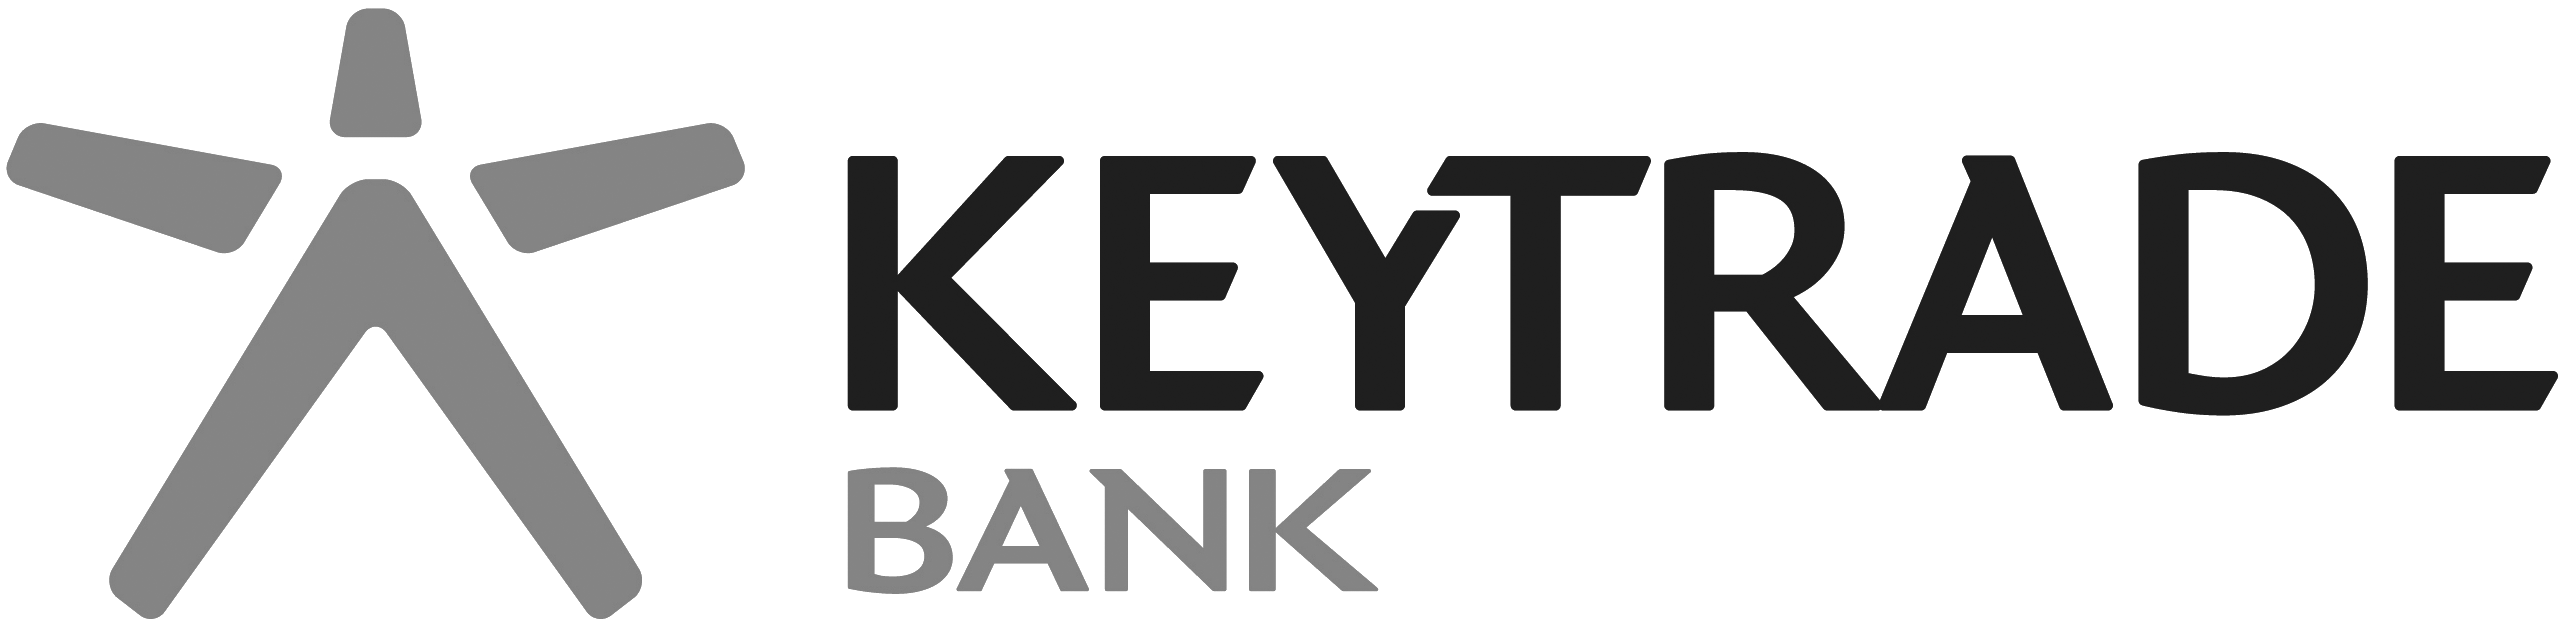 keytrade_bank_zwartwit